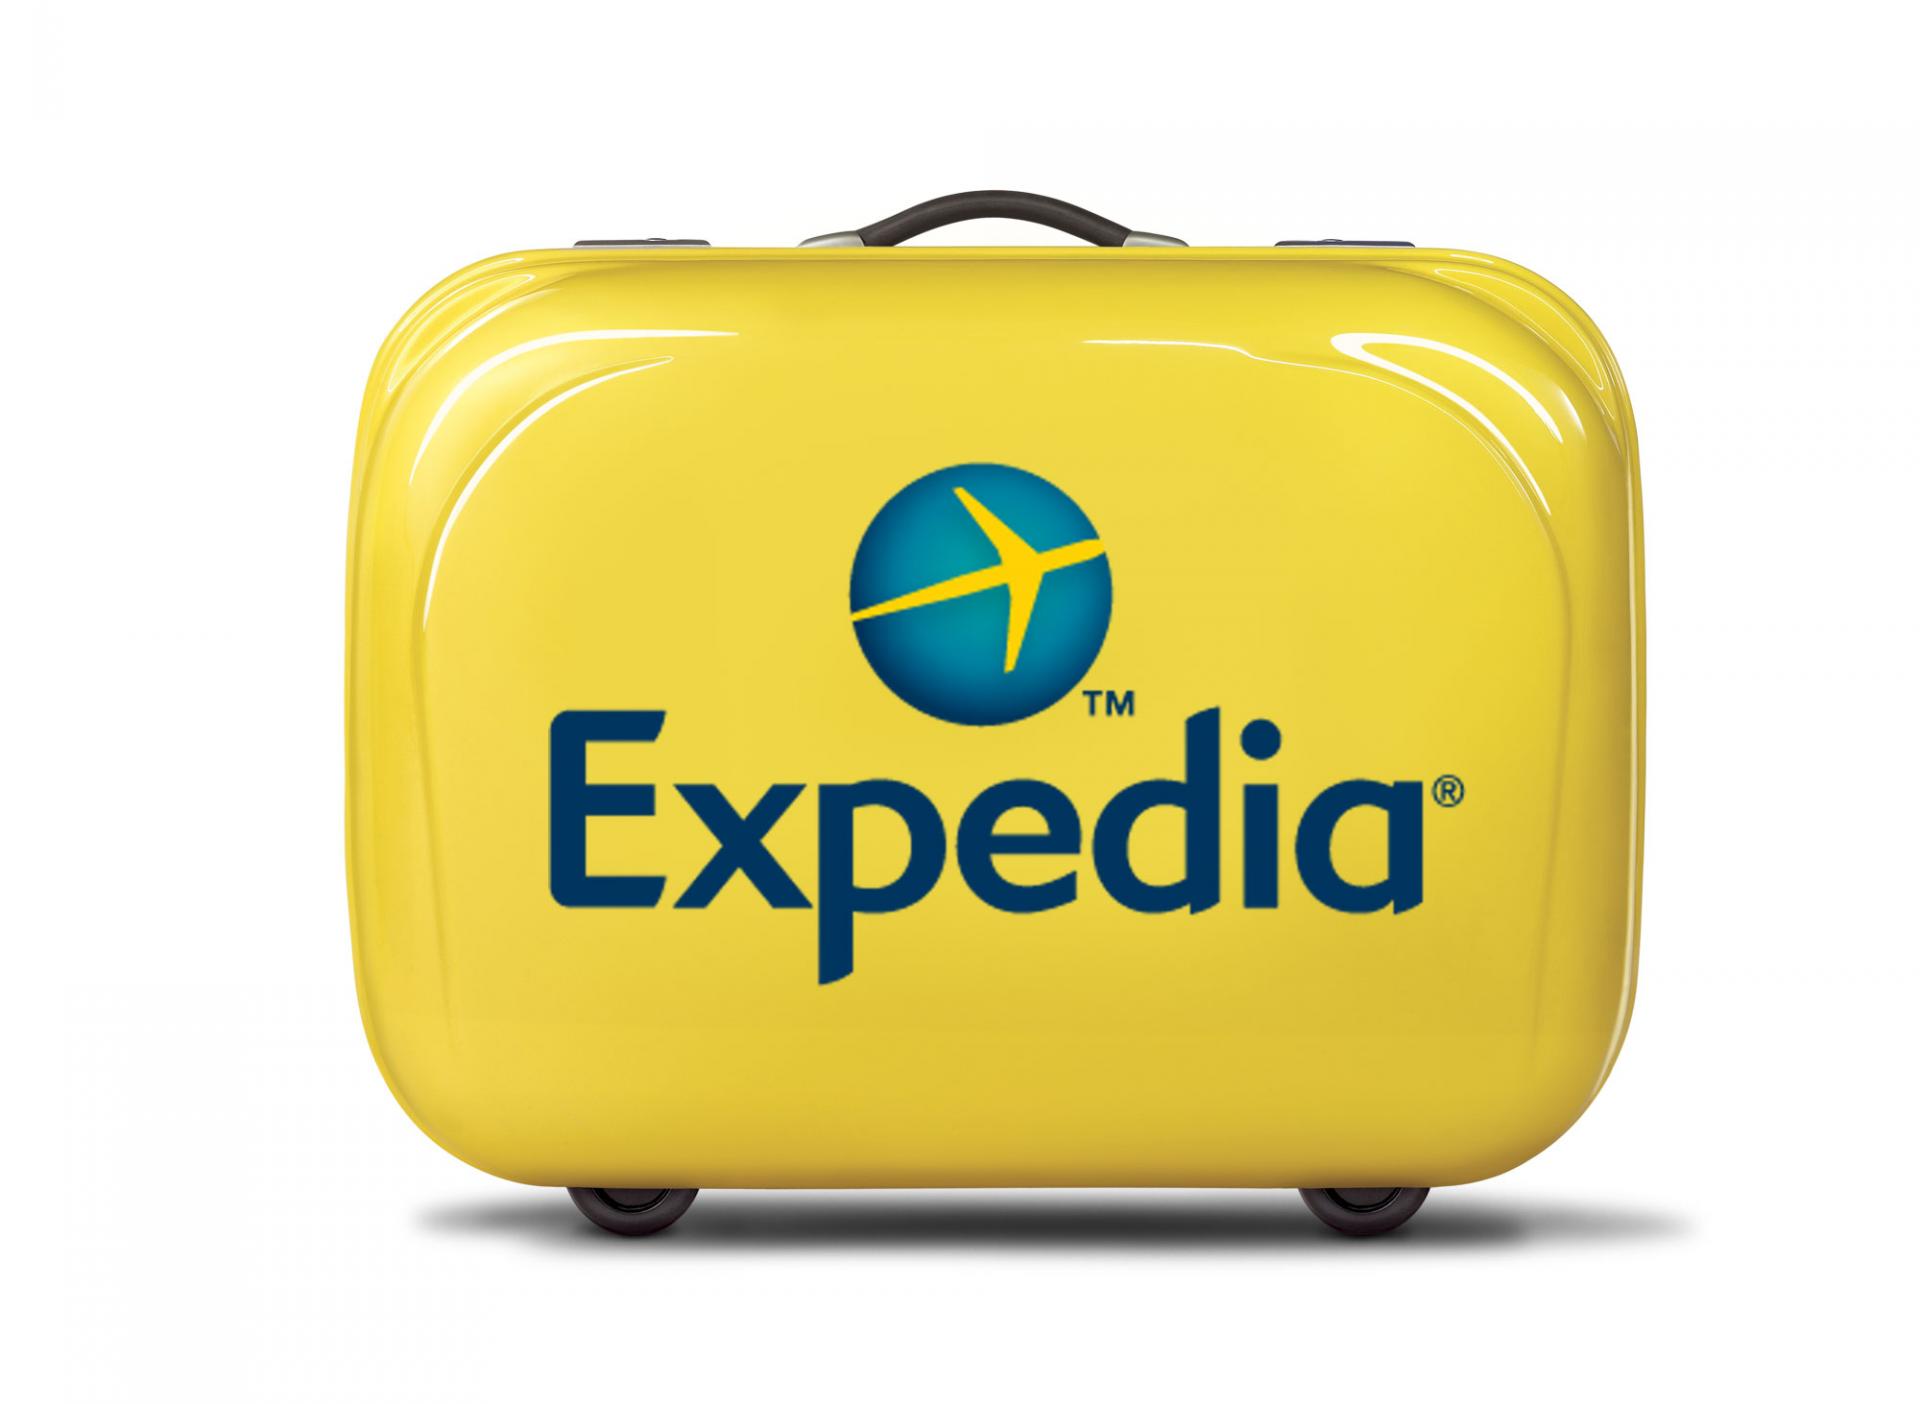 Expedia suitcase